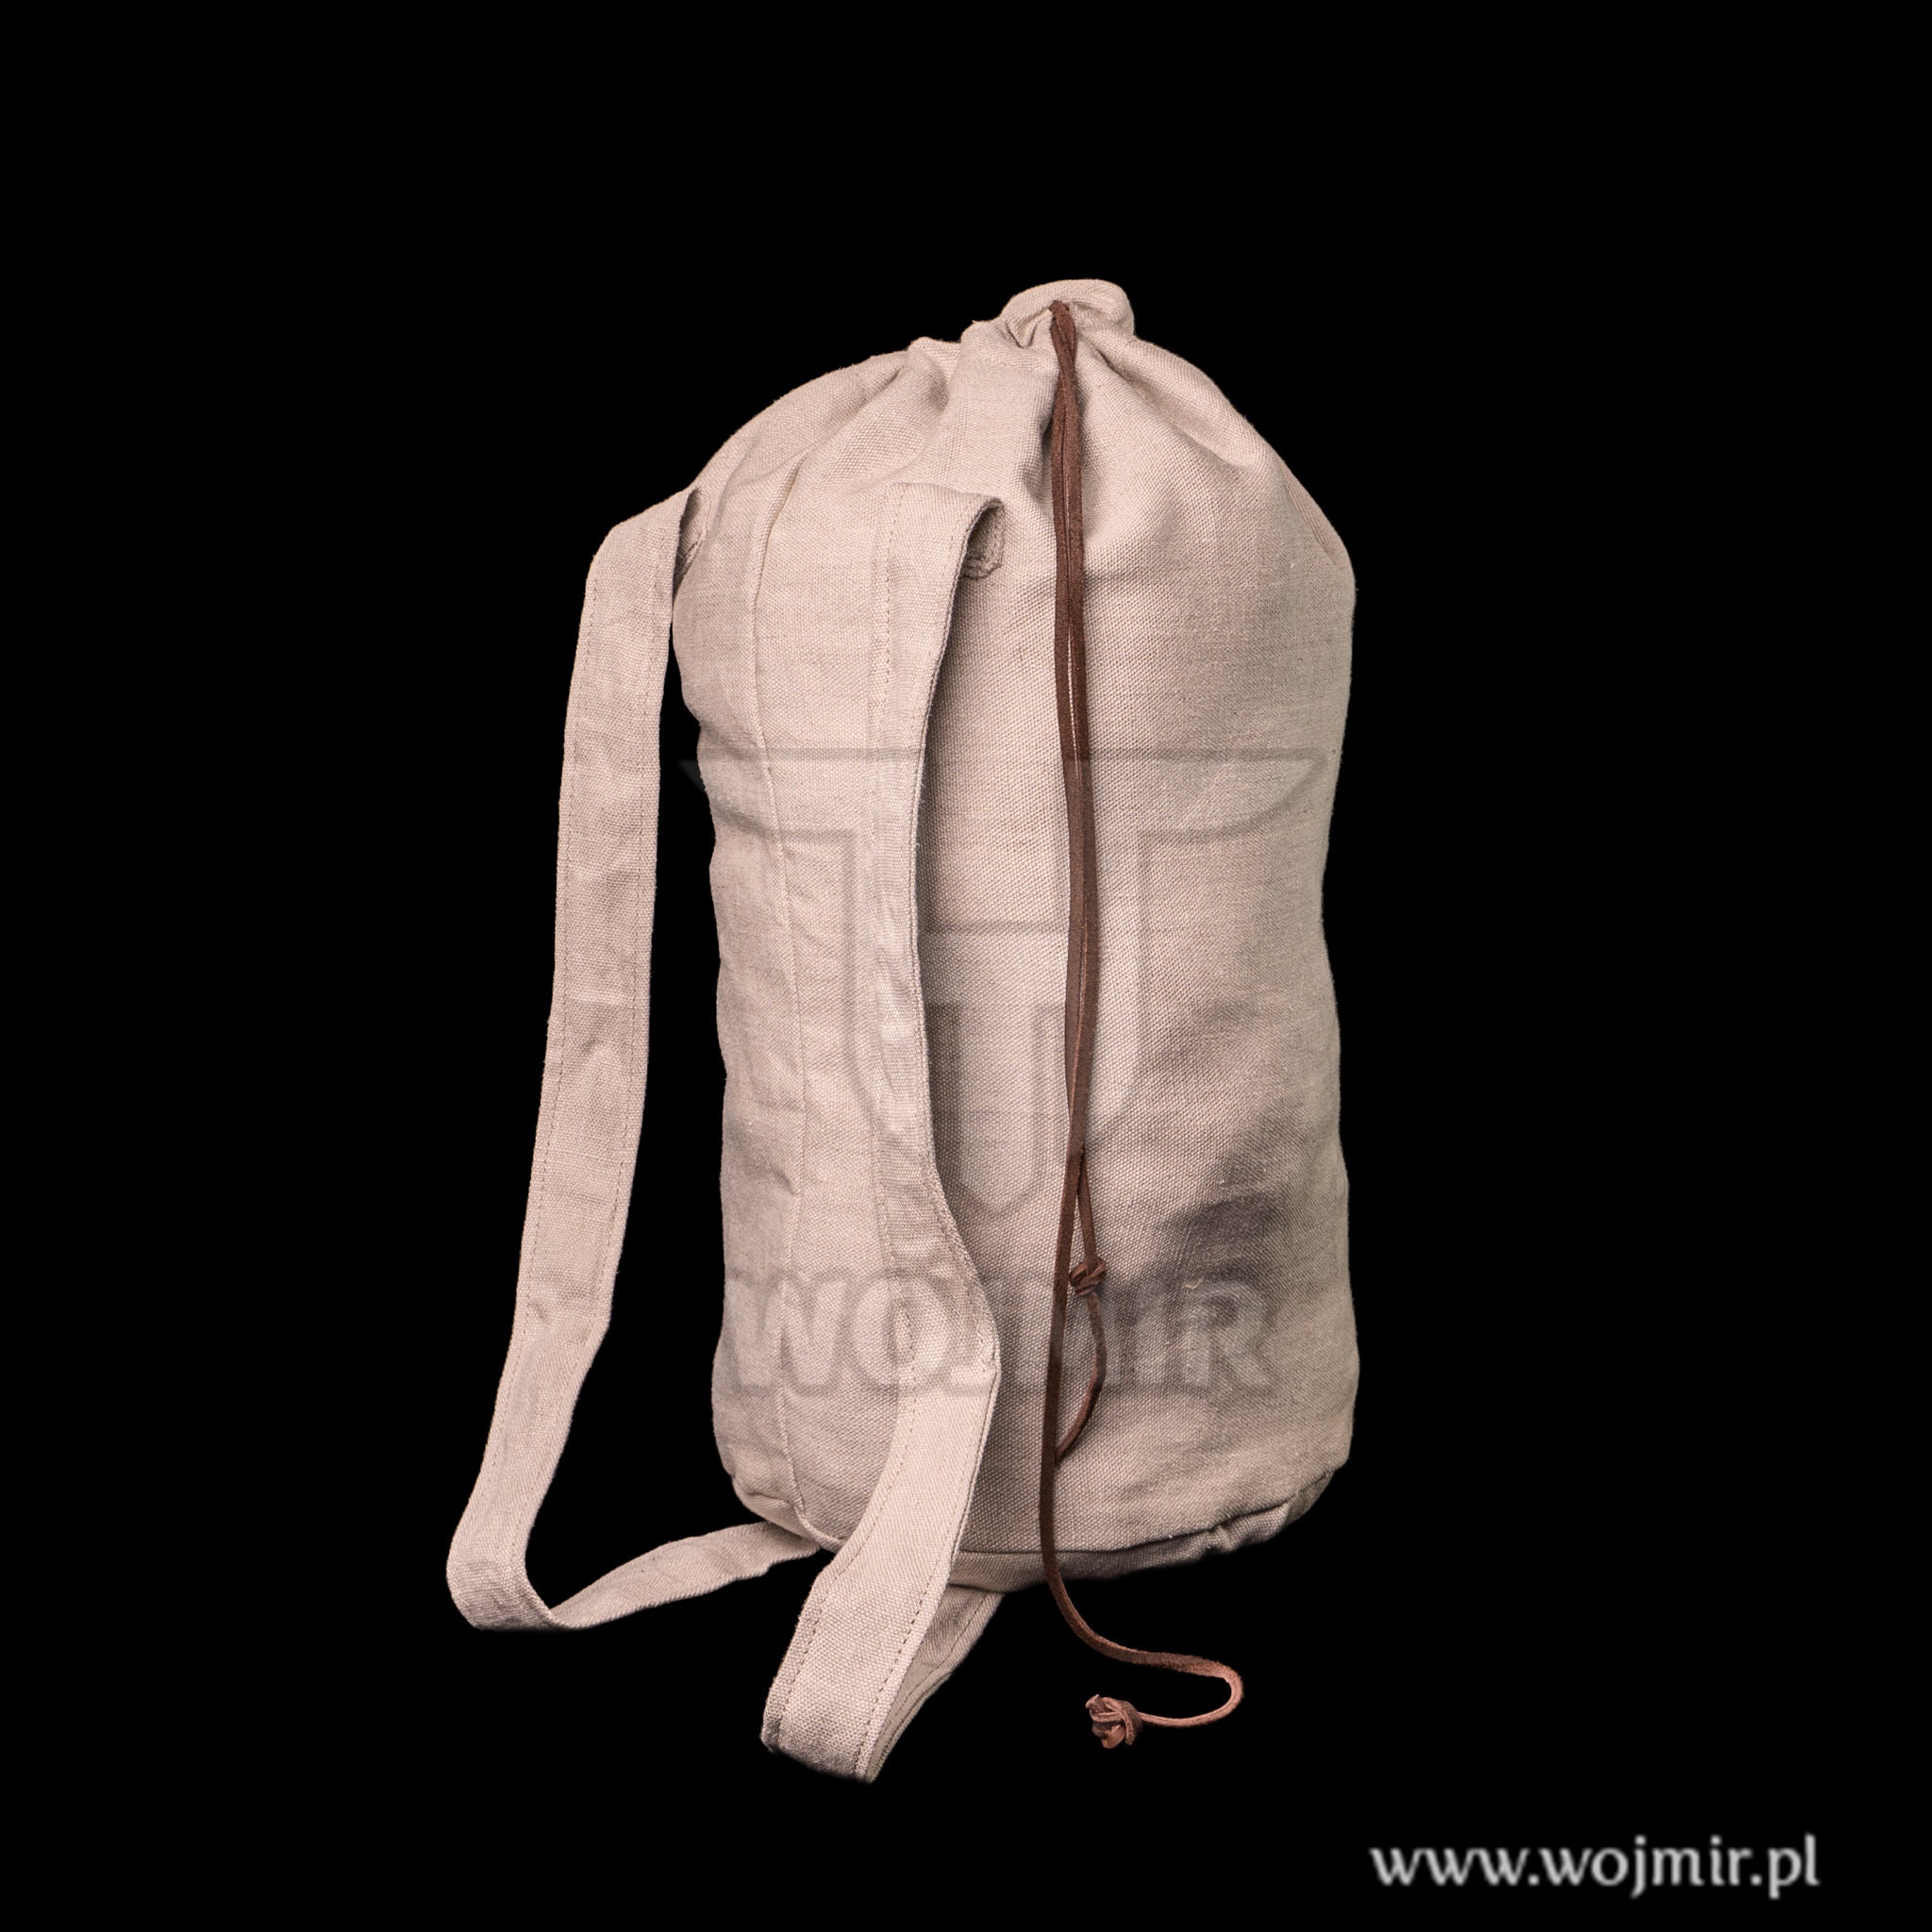 The Last of Us Ellie Cosplay Backpack Anime 3D Print School Bag School